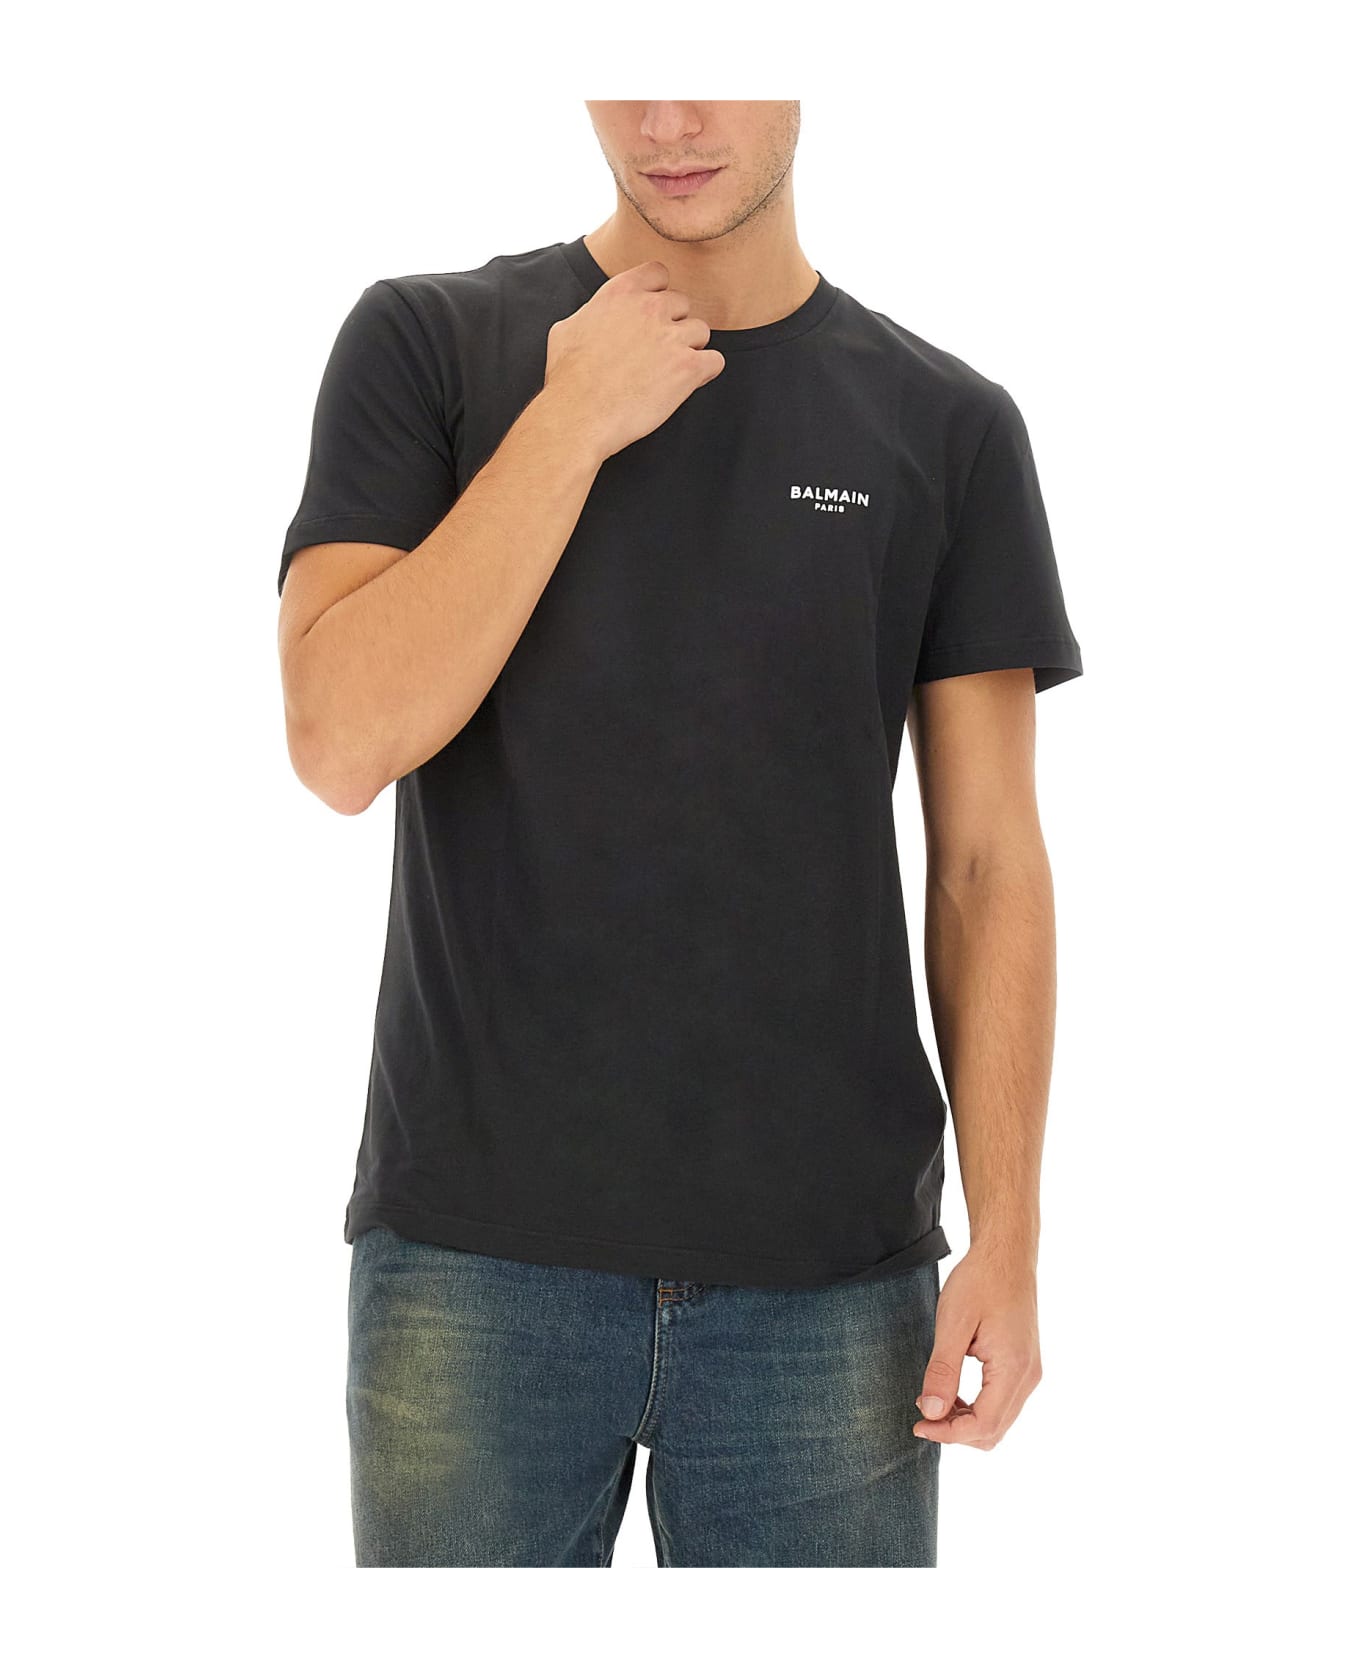 Balmain T-shirt With Logo - Eab Noir Blanc シャツ